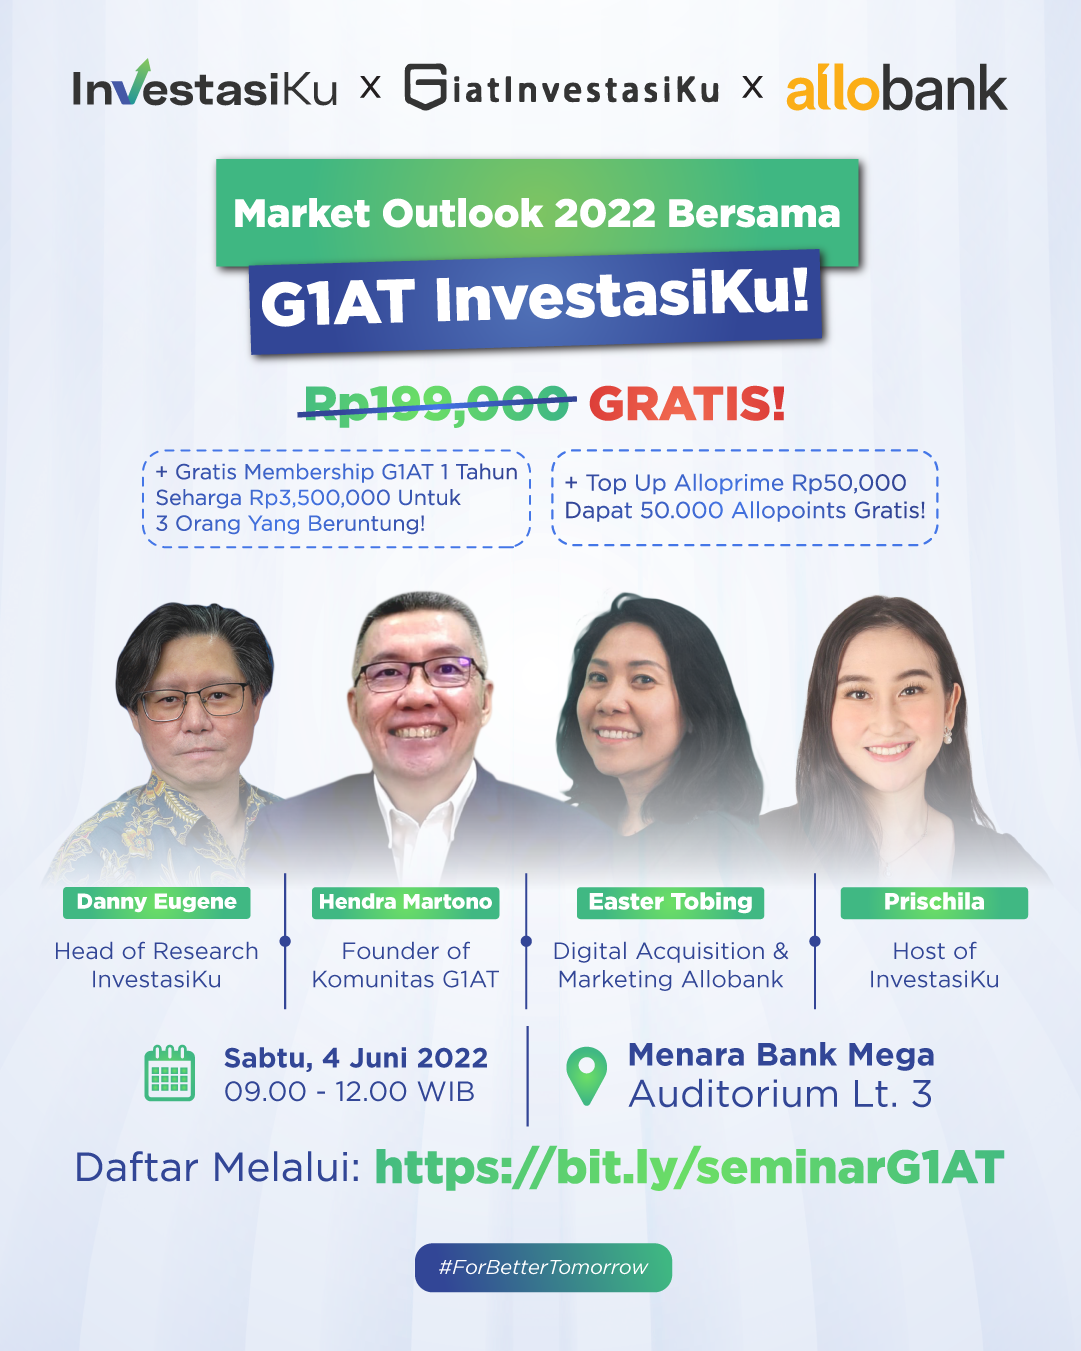 Market Outlook 2022 Bersama G1at InvestasiKu! 